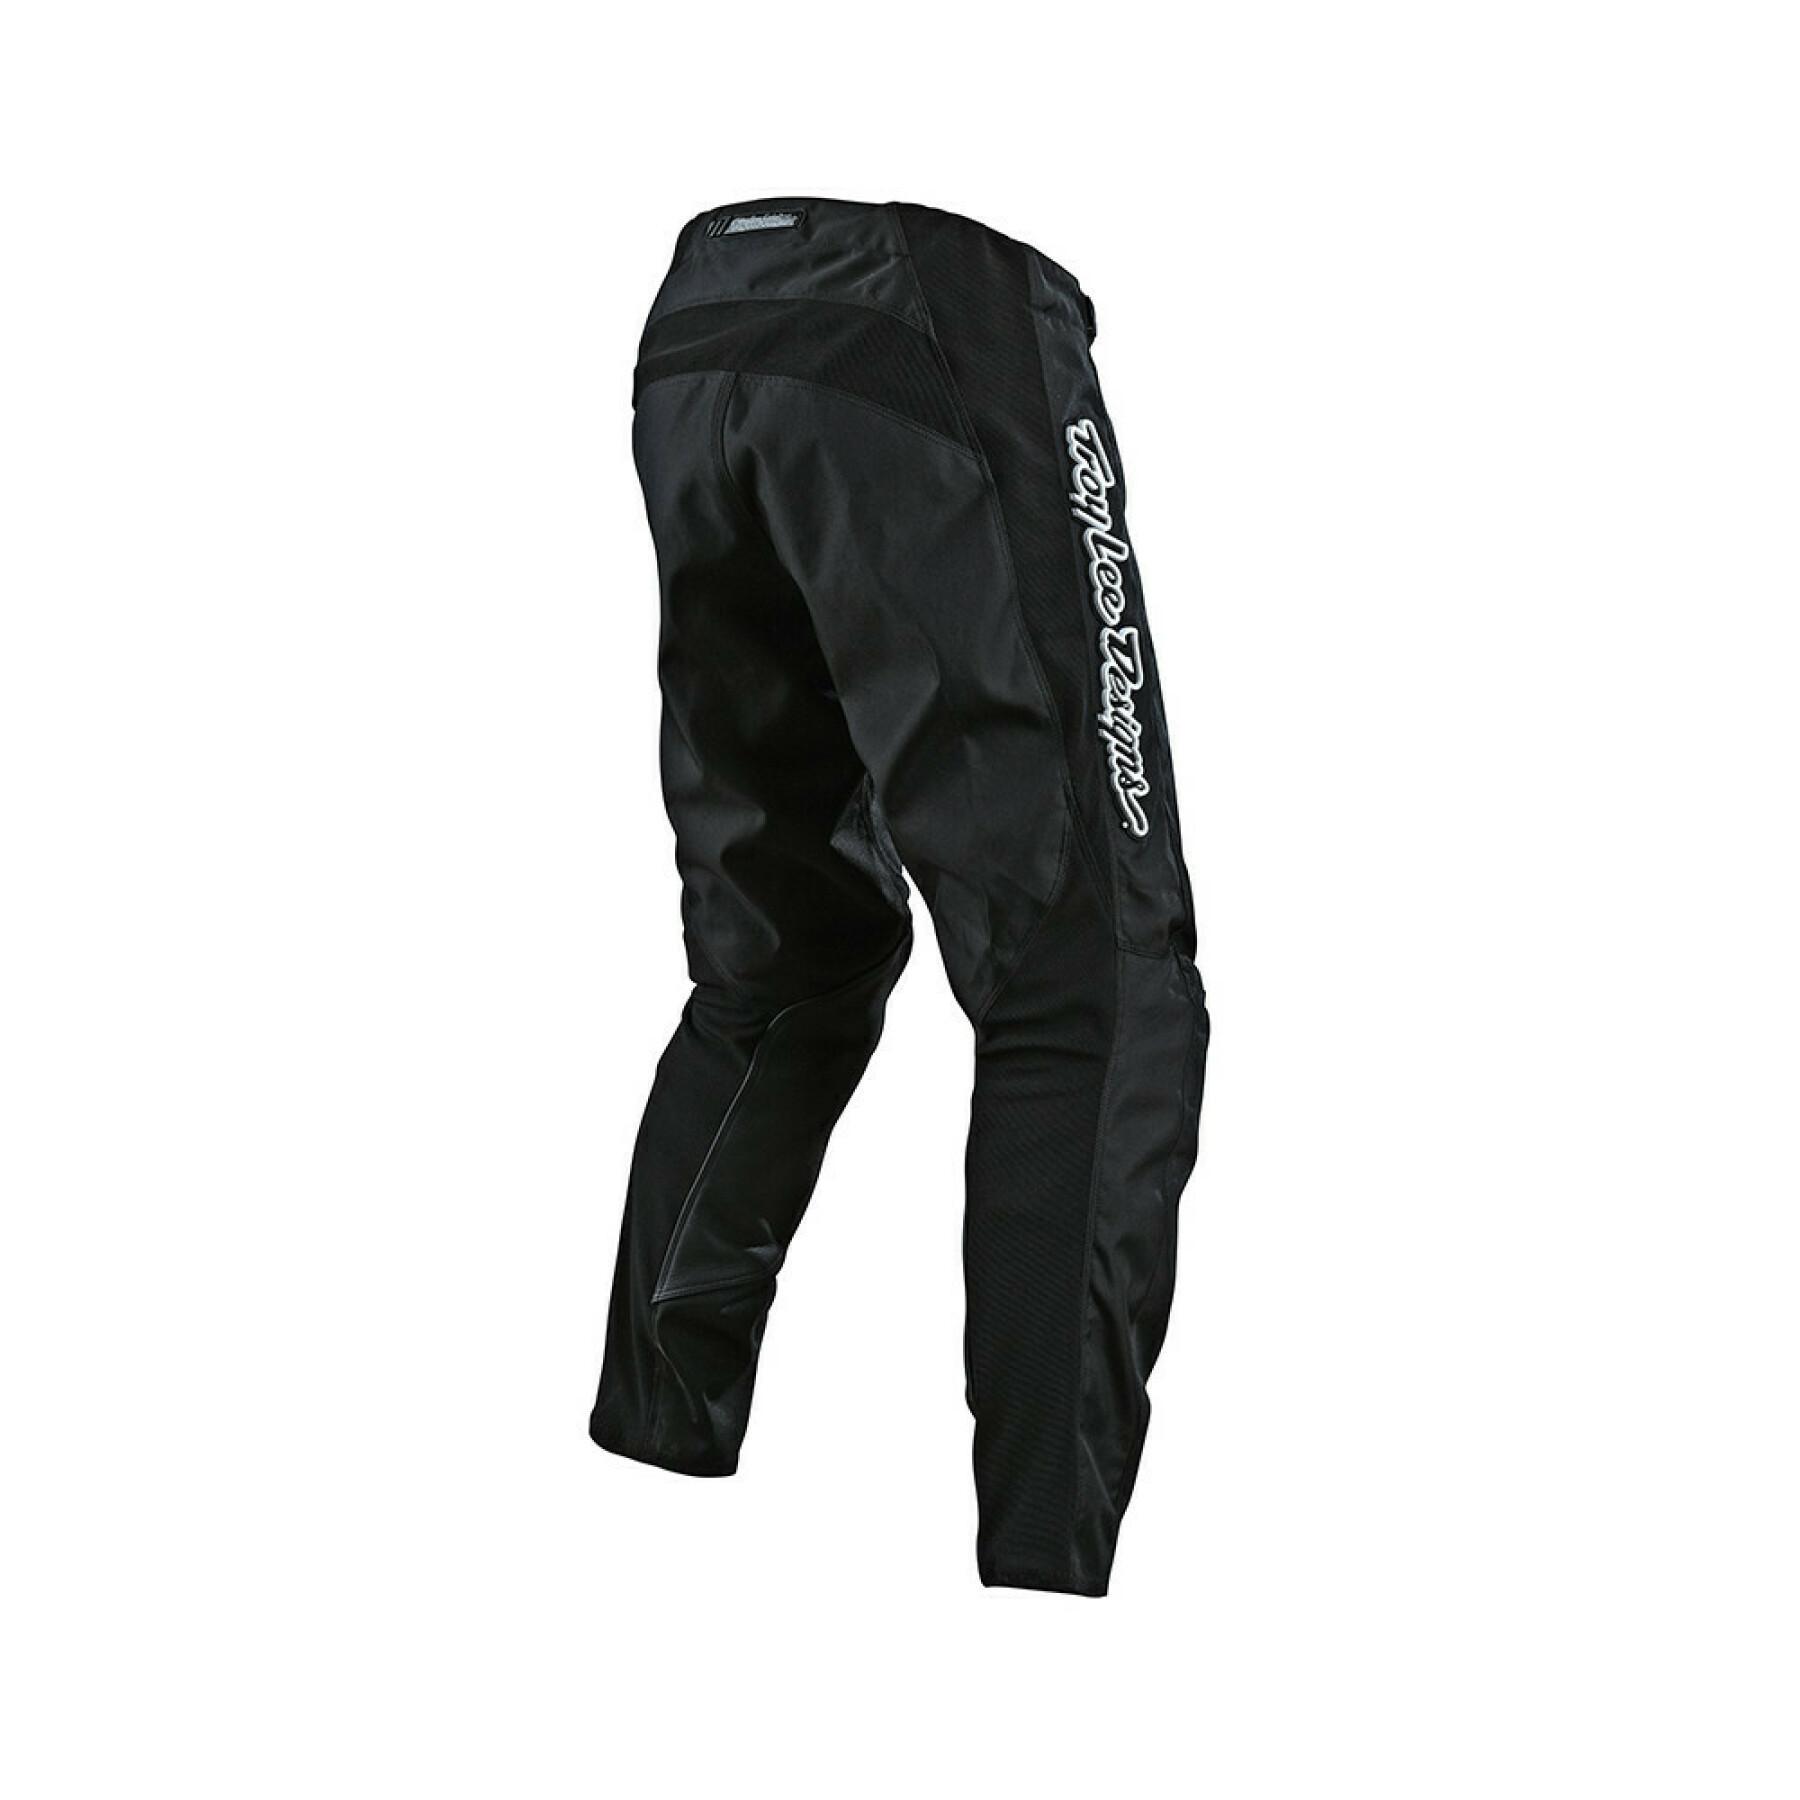 Pantalones de moto Troy Lee Designs GP mono